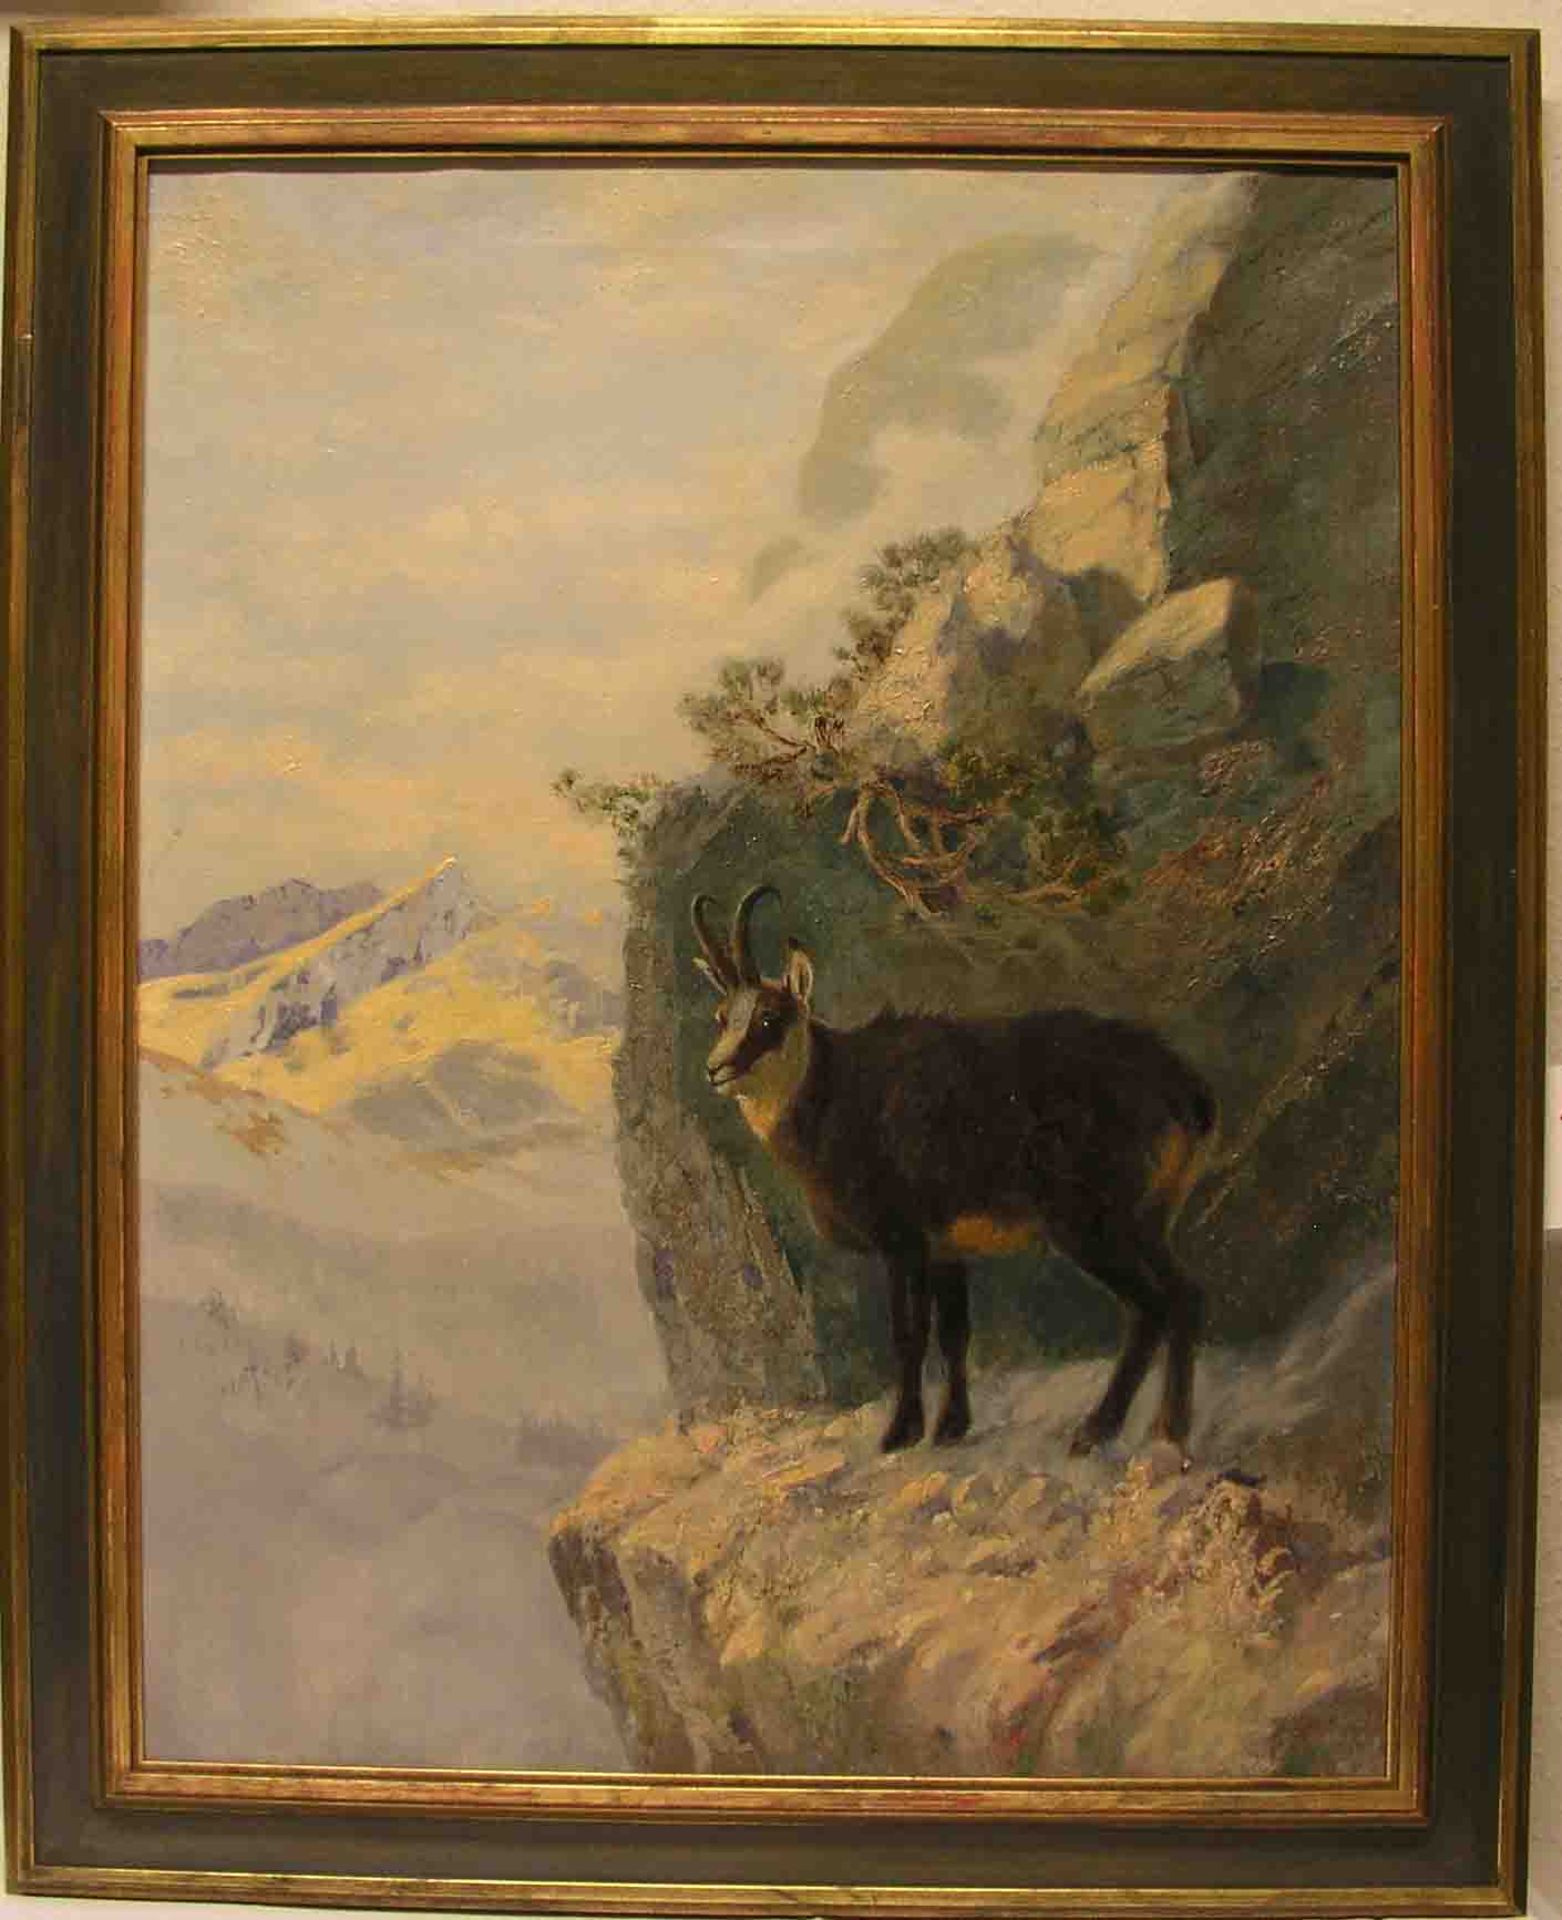 Singer, Albert (1869 - 1922) Tiermaler: "Gämsbock". Öl/Lwd., signiert, 89 x 69cm. Rahmen.